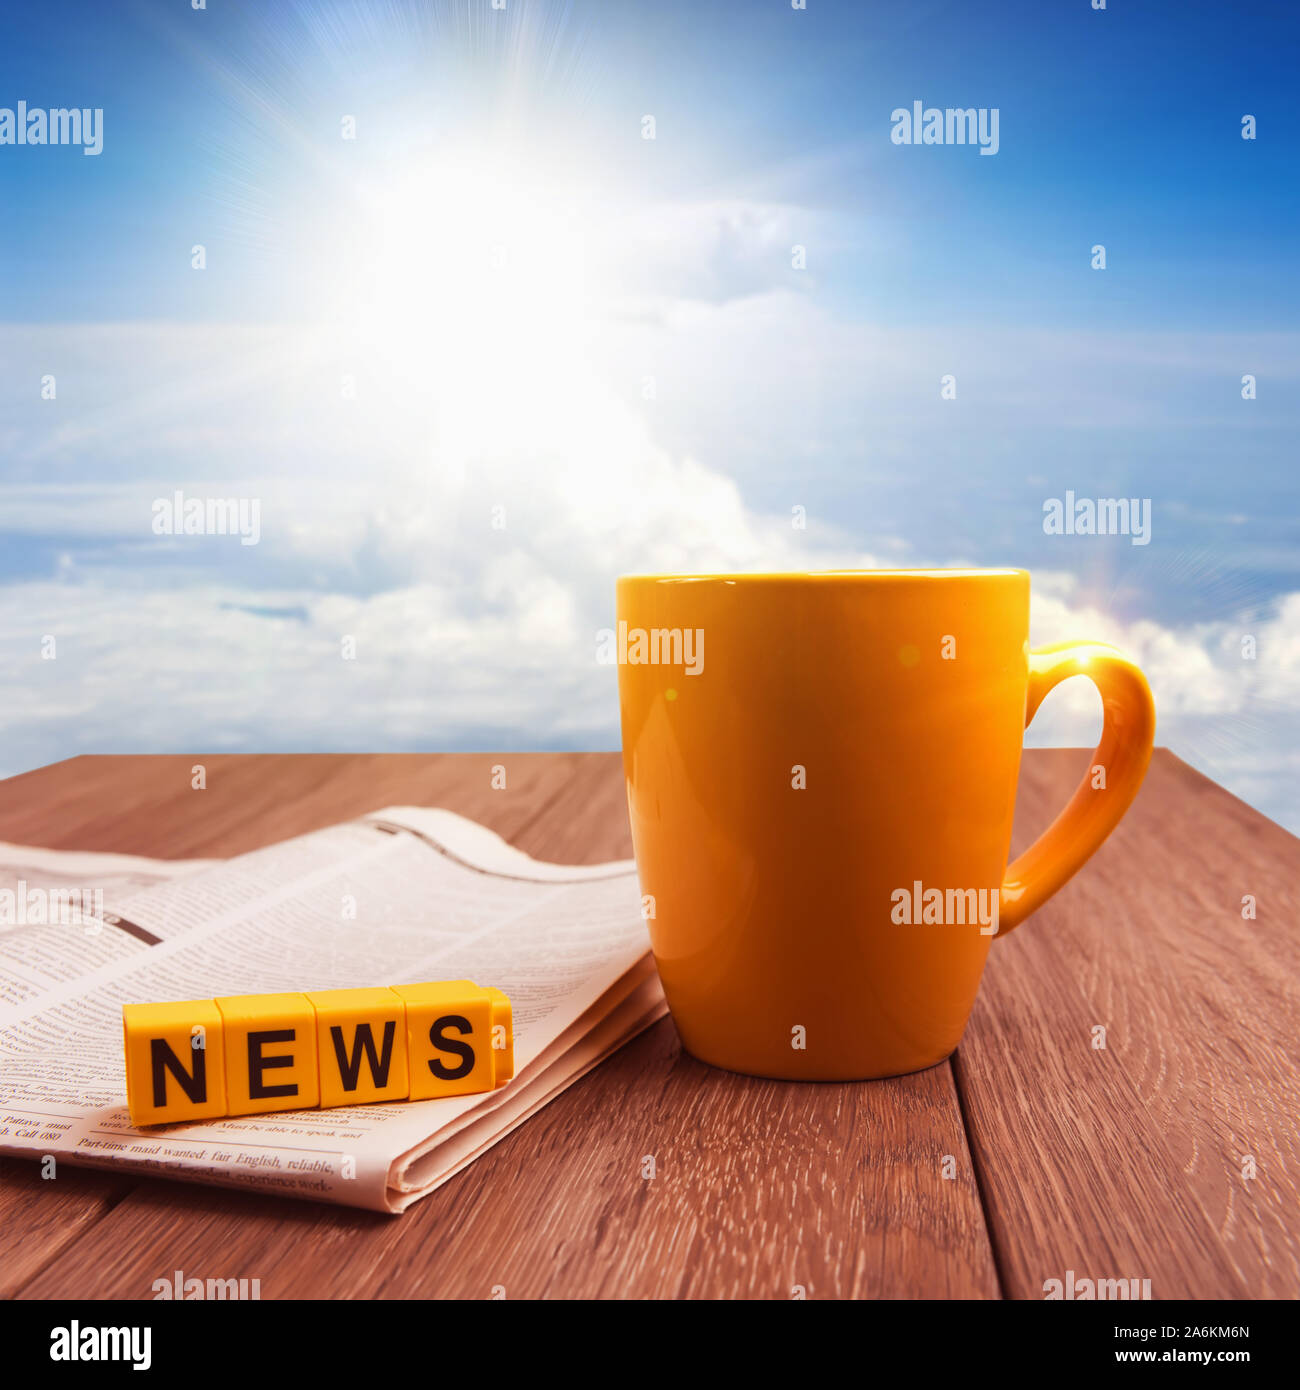 Gute Nachrichten am Morgen Zeit collage Bild. Becher Kaffee und Zeitung auf hölzernen Tisch bei Sonnenaufgang Stockfoto